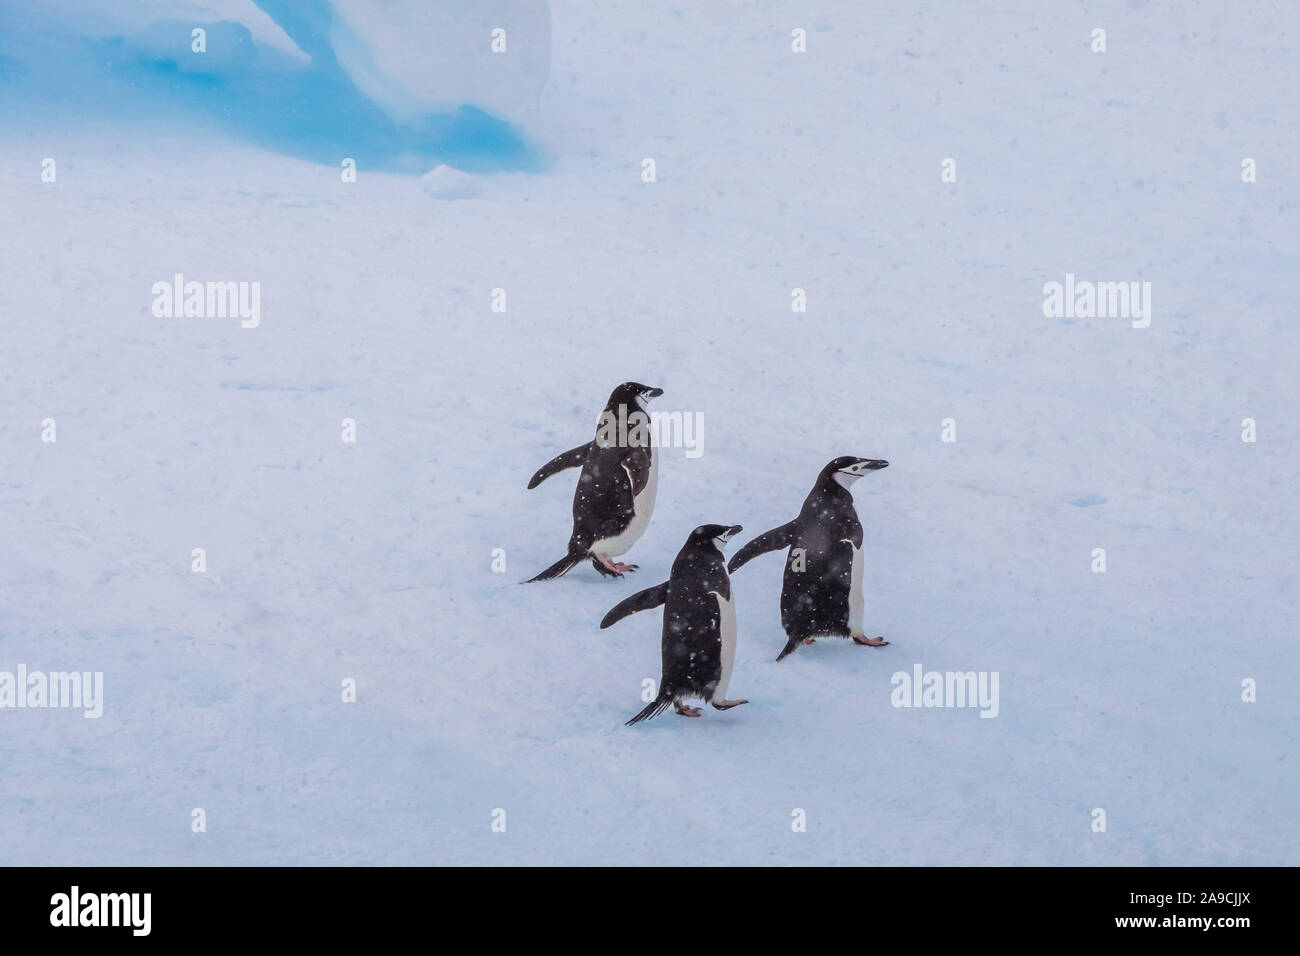 Groupe de gamla sur iceberg dans l'Antarctique, la faune, paysage gelé blanc préservation, péninsule antarctique Banque D'Images